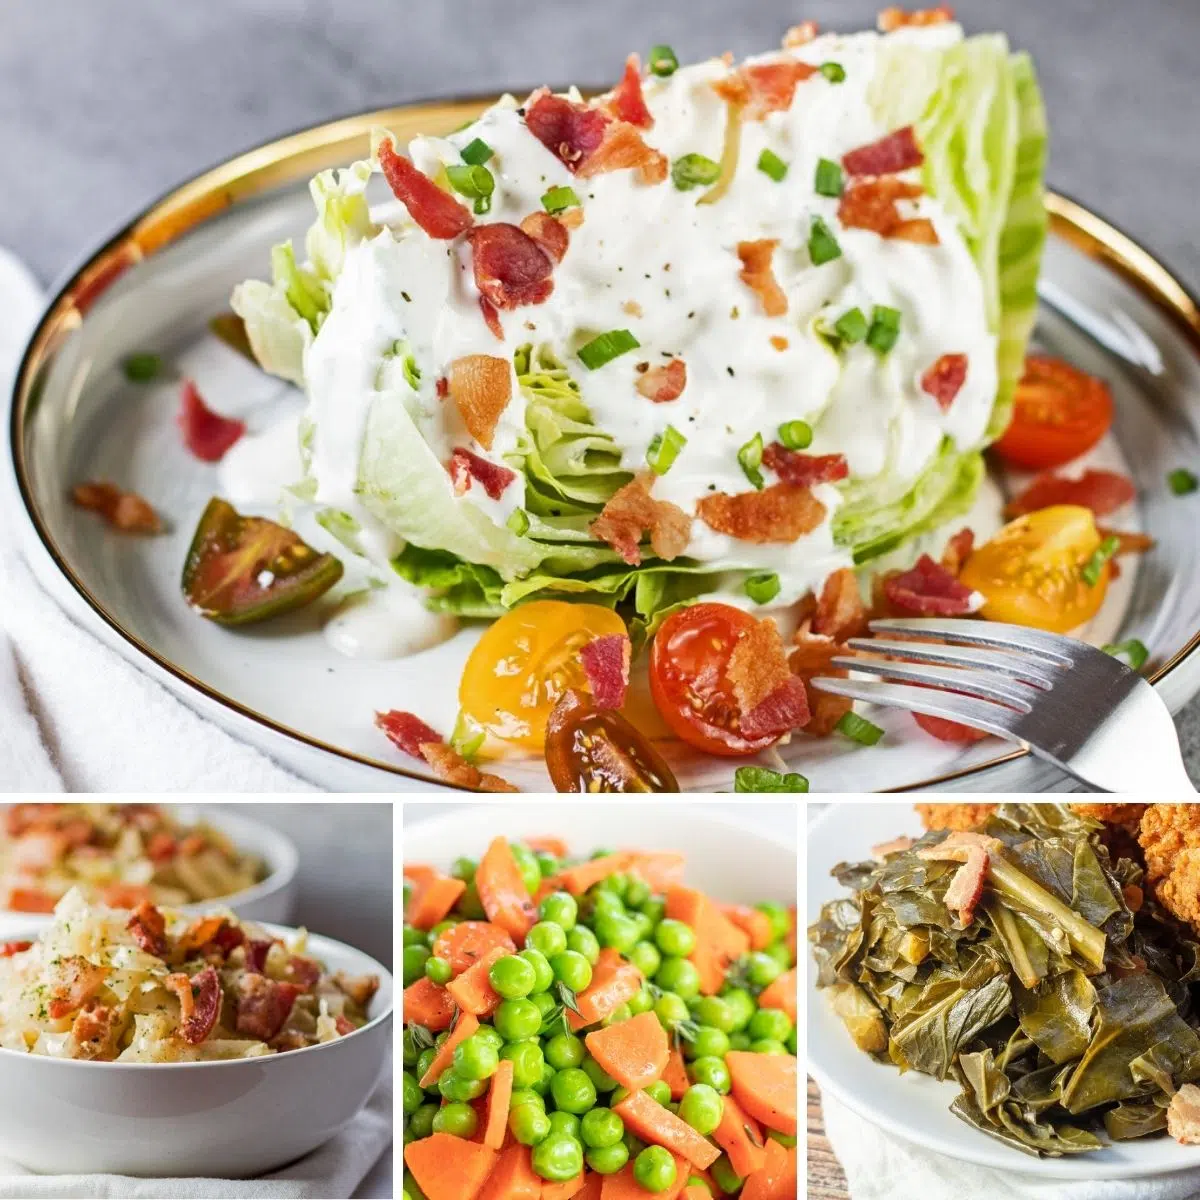 Najbolji prilozi od povrća za posluživanje uz bilo koji obrok kao što je prikazano s ova 4 istaknuta recepta u kolažnoj slici.